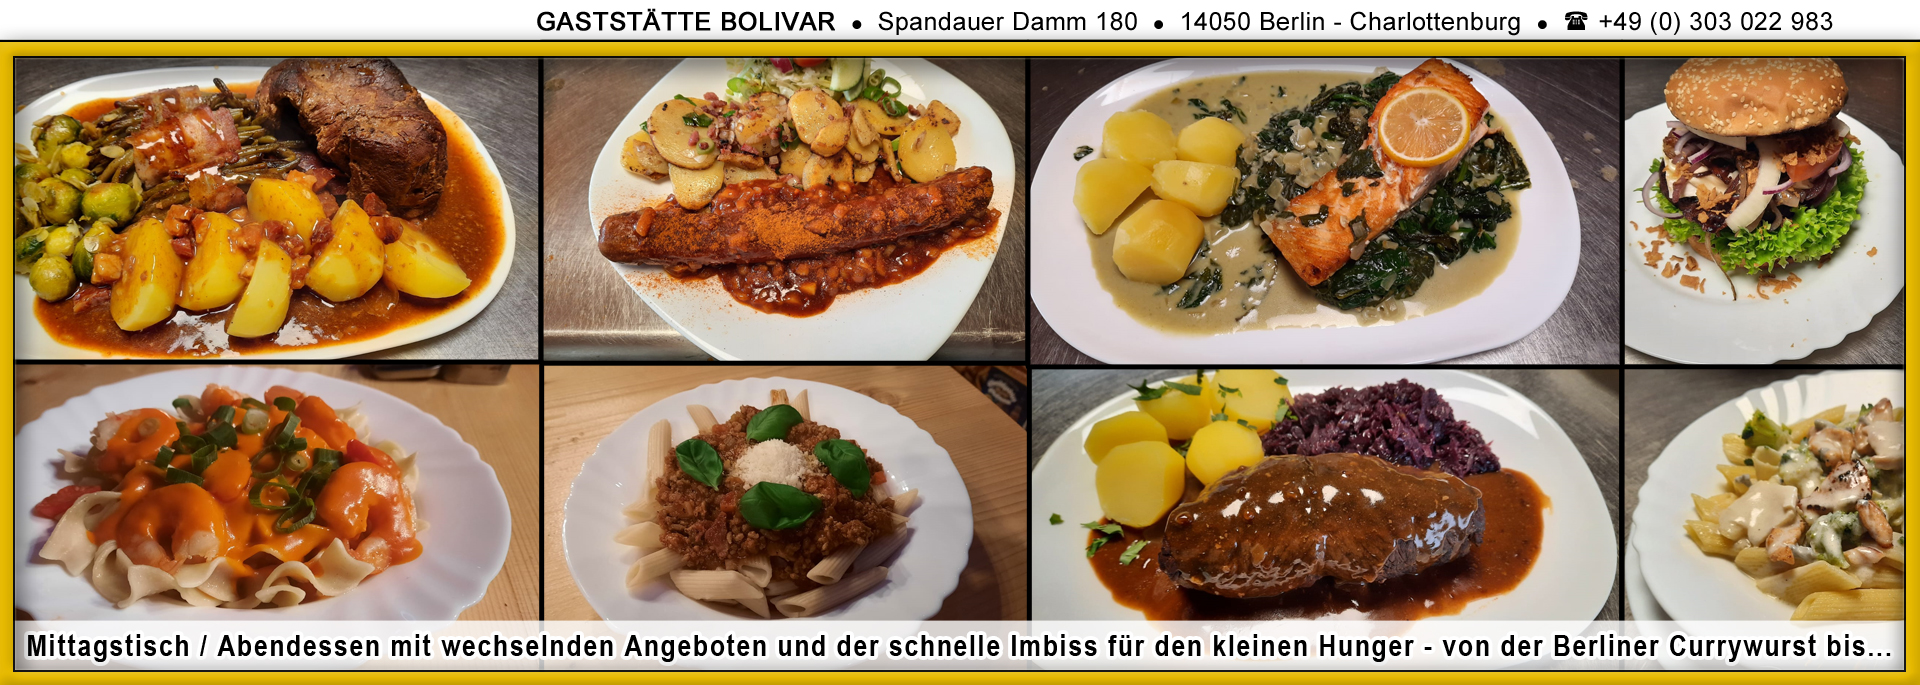 bolivar-berlin-charlottenburg-westend-mittagstisch-schnell-imbiss-currywurst-boulette-02